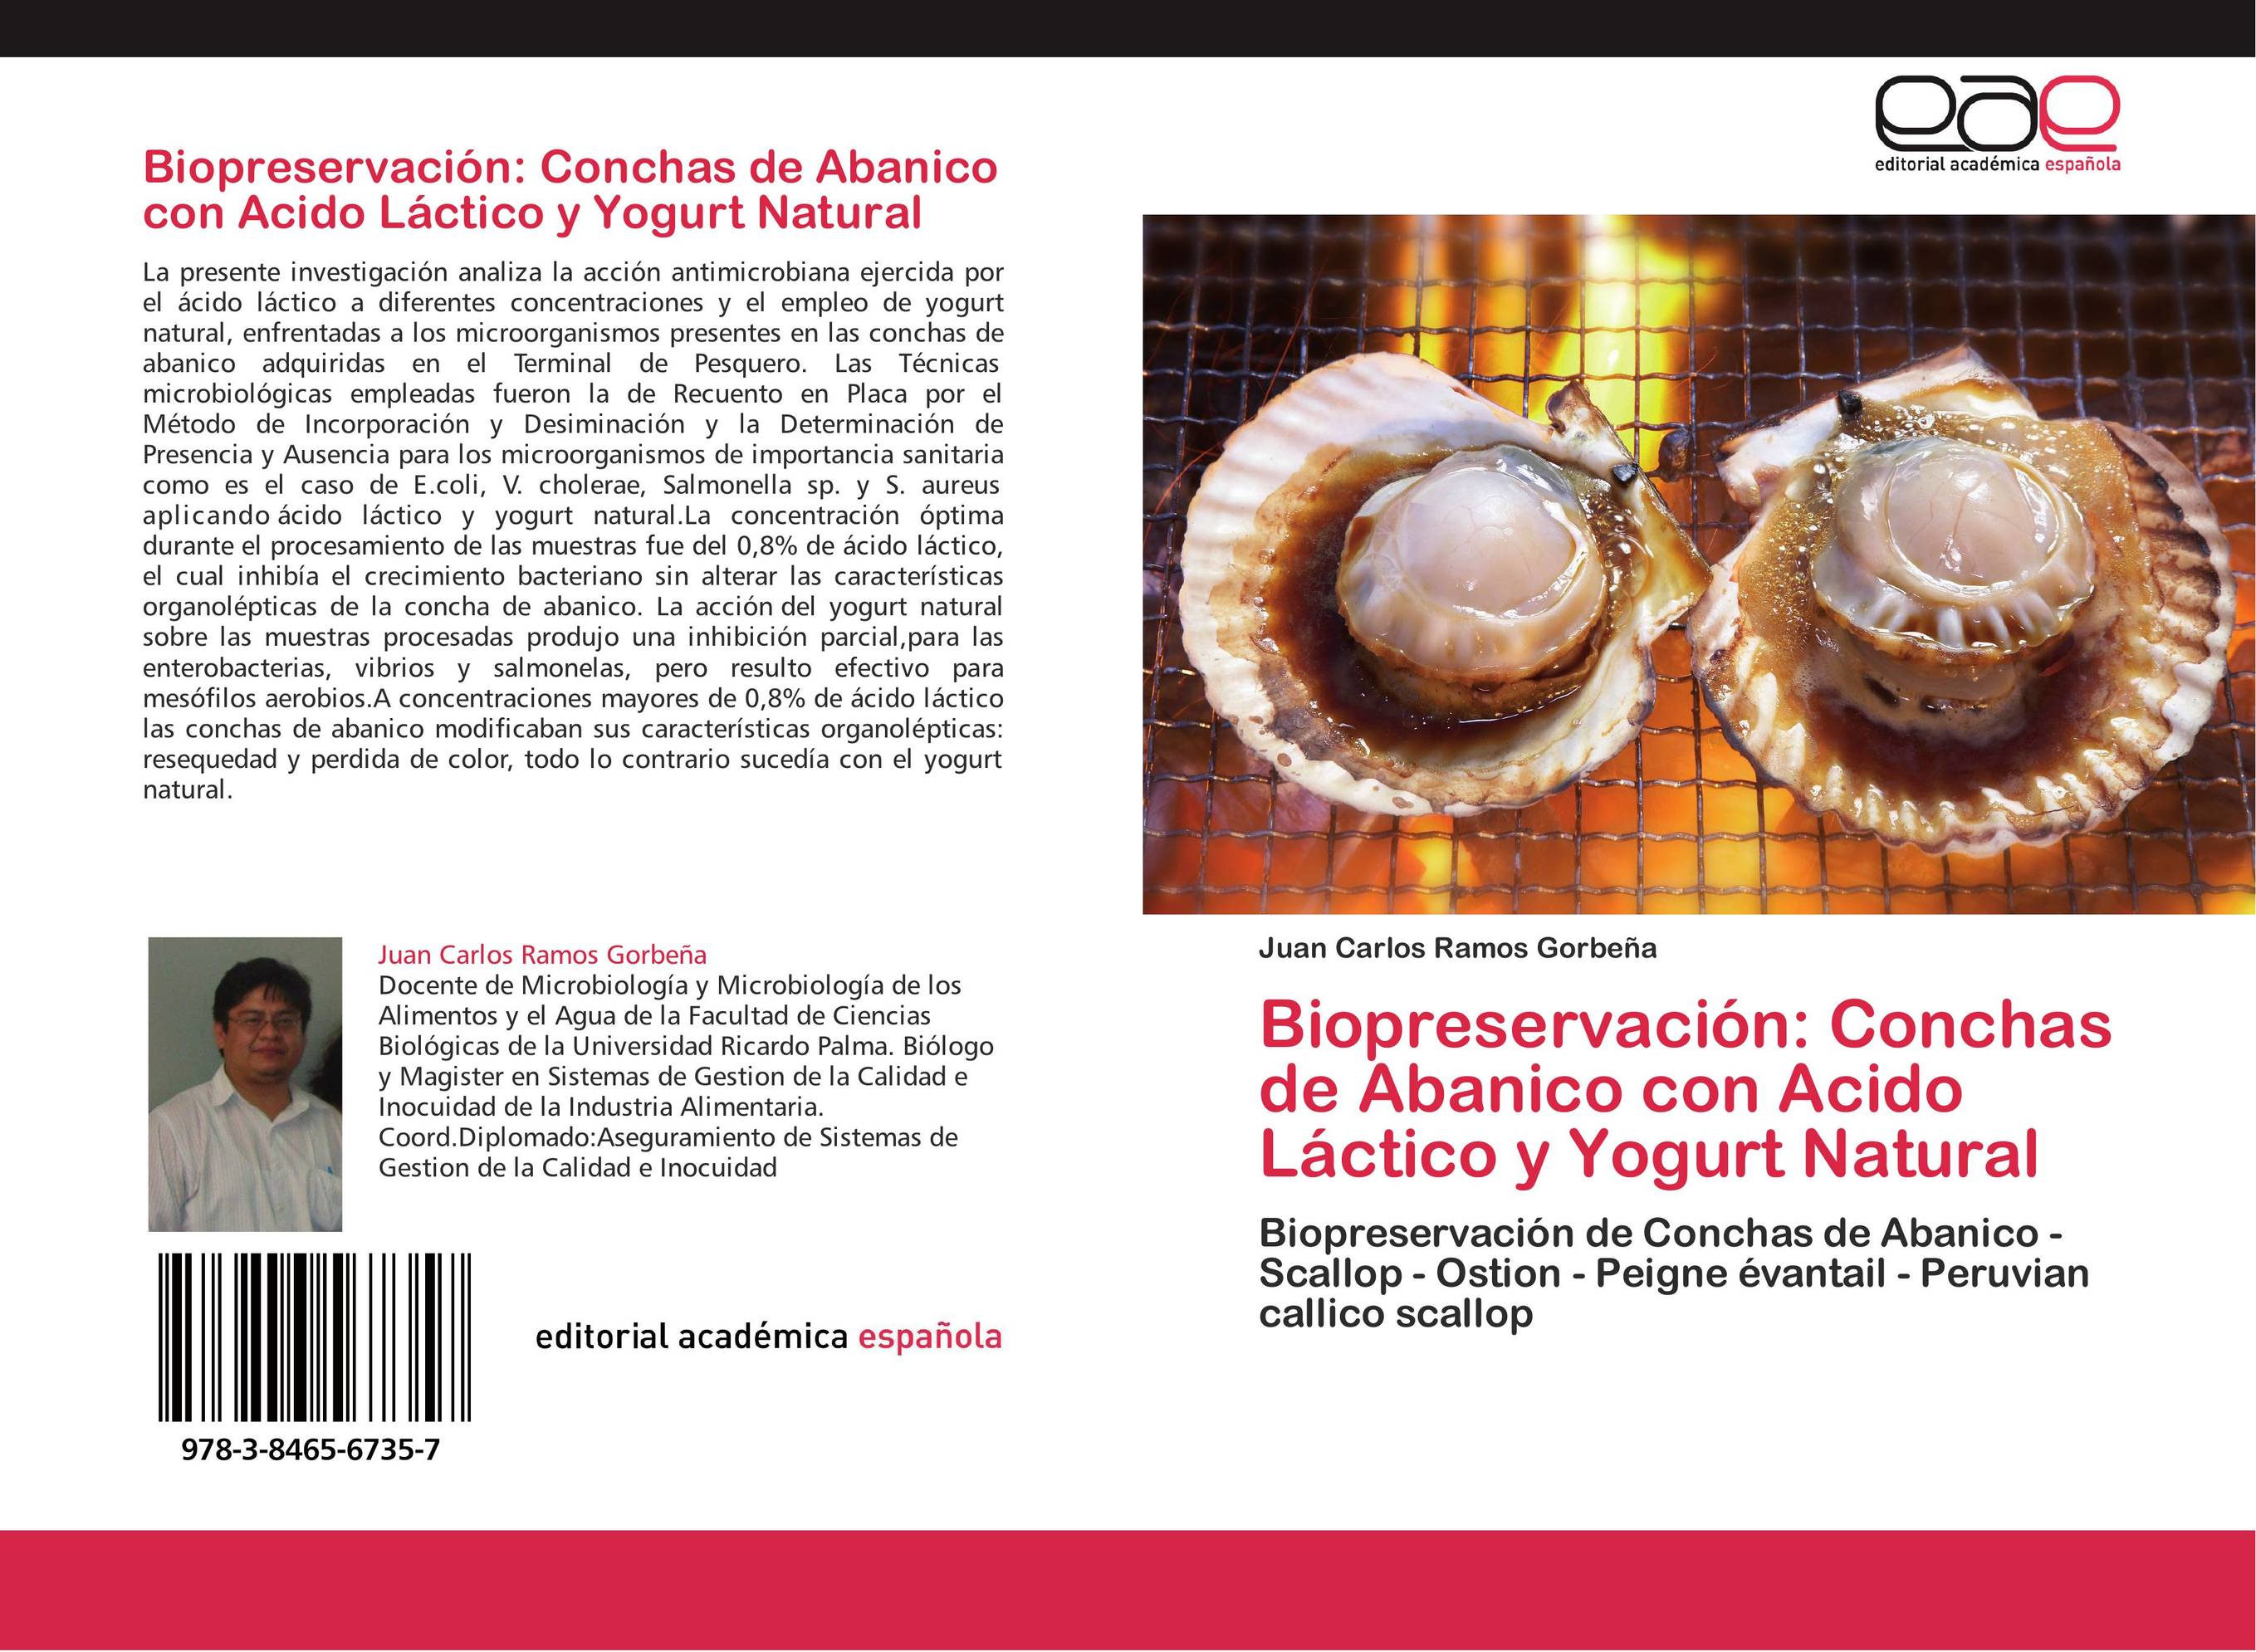 Biopreservación: Conchas de Abanico con Acido Láctico y Yogurt Natural